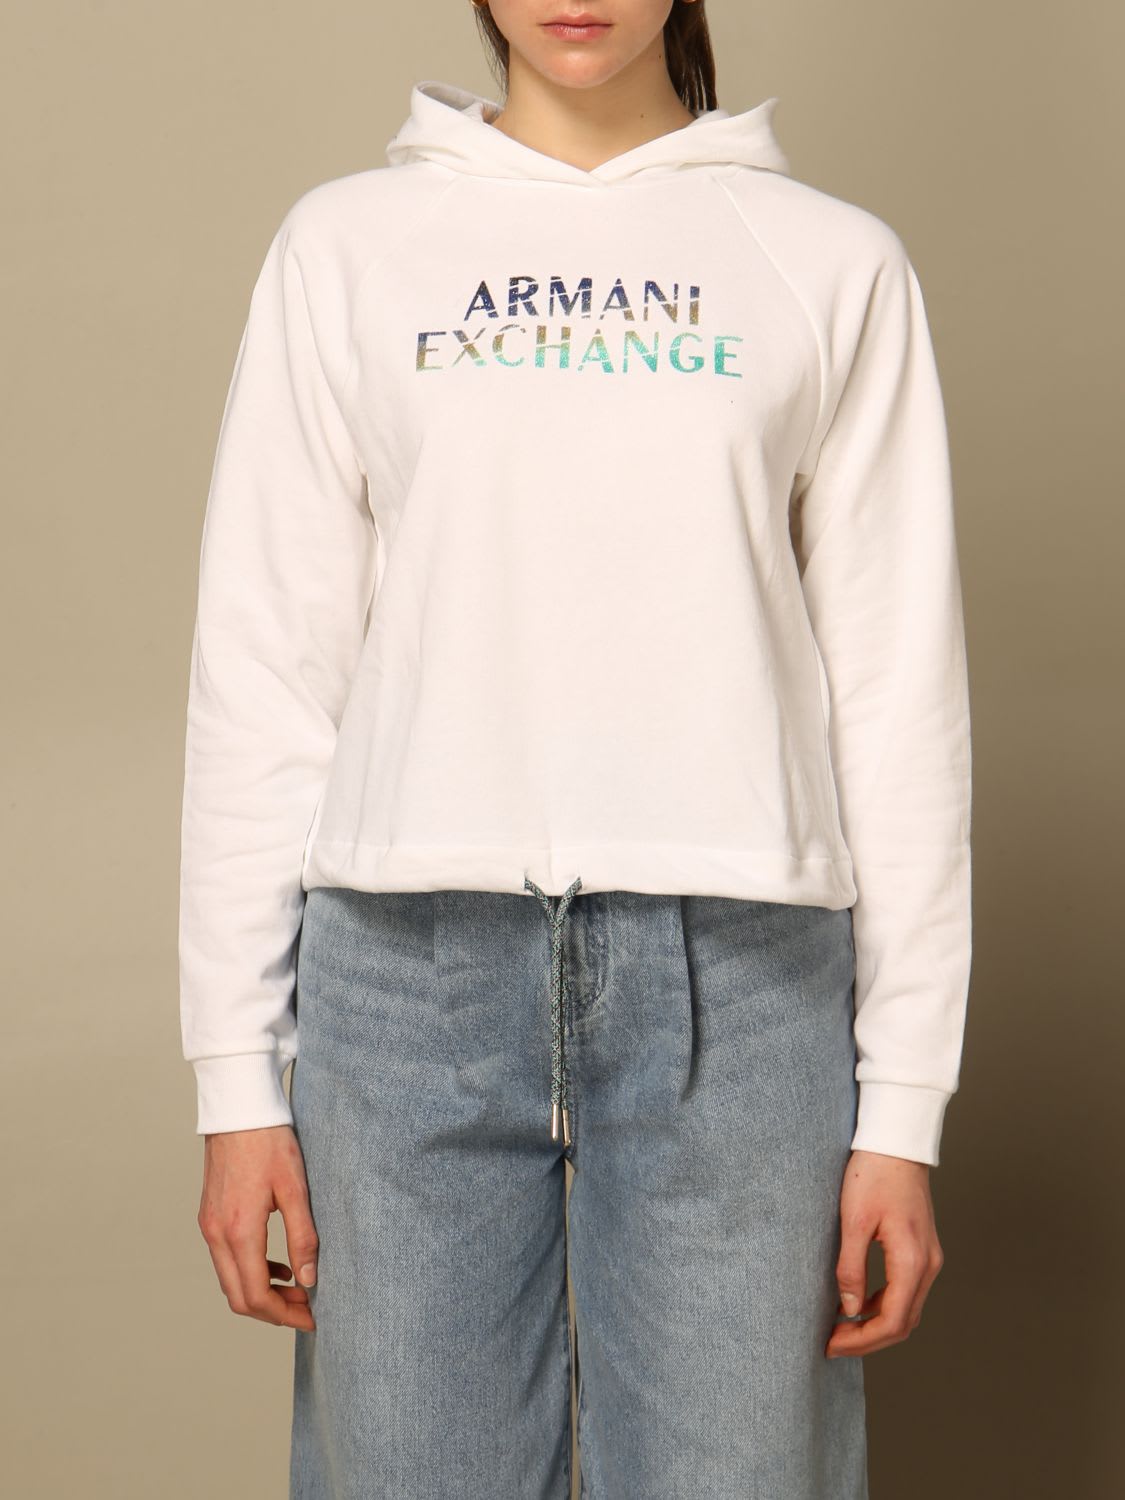 Armani Collezioni Armani Exchange Sweatshirt Armani Exchange Sweatshirt With Logo